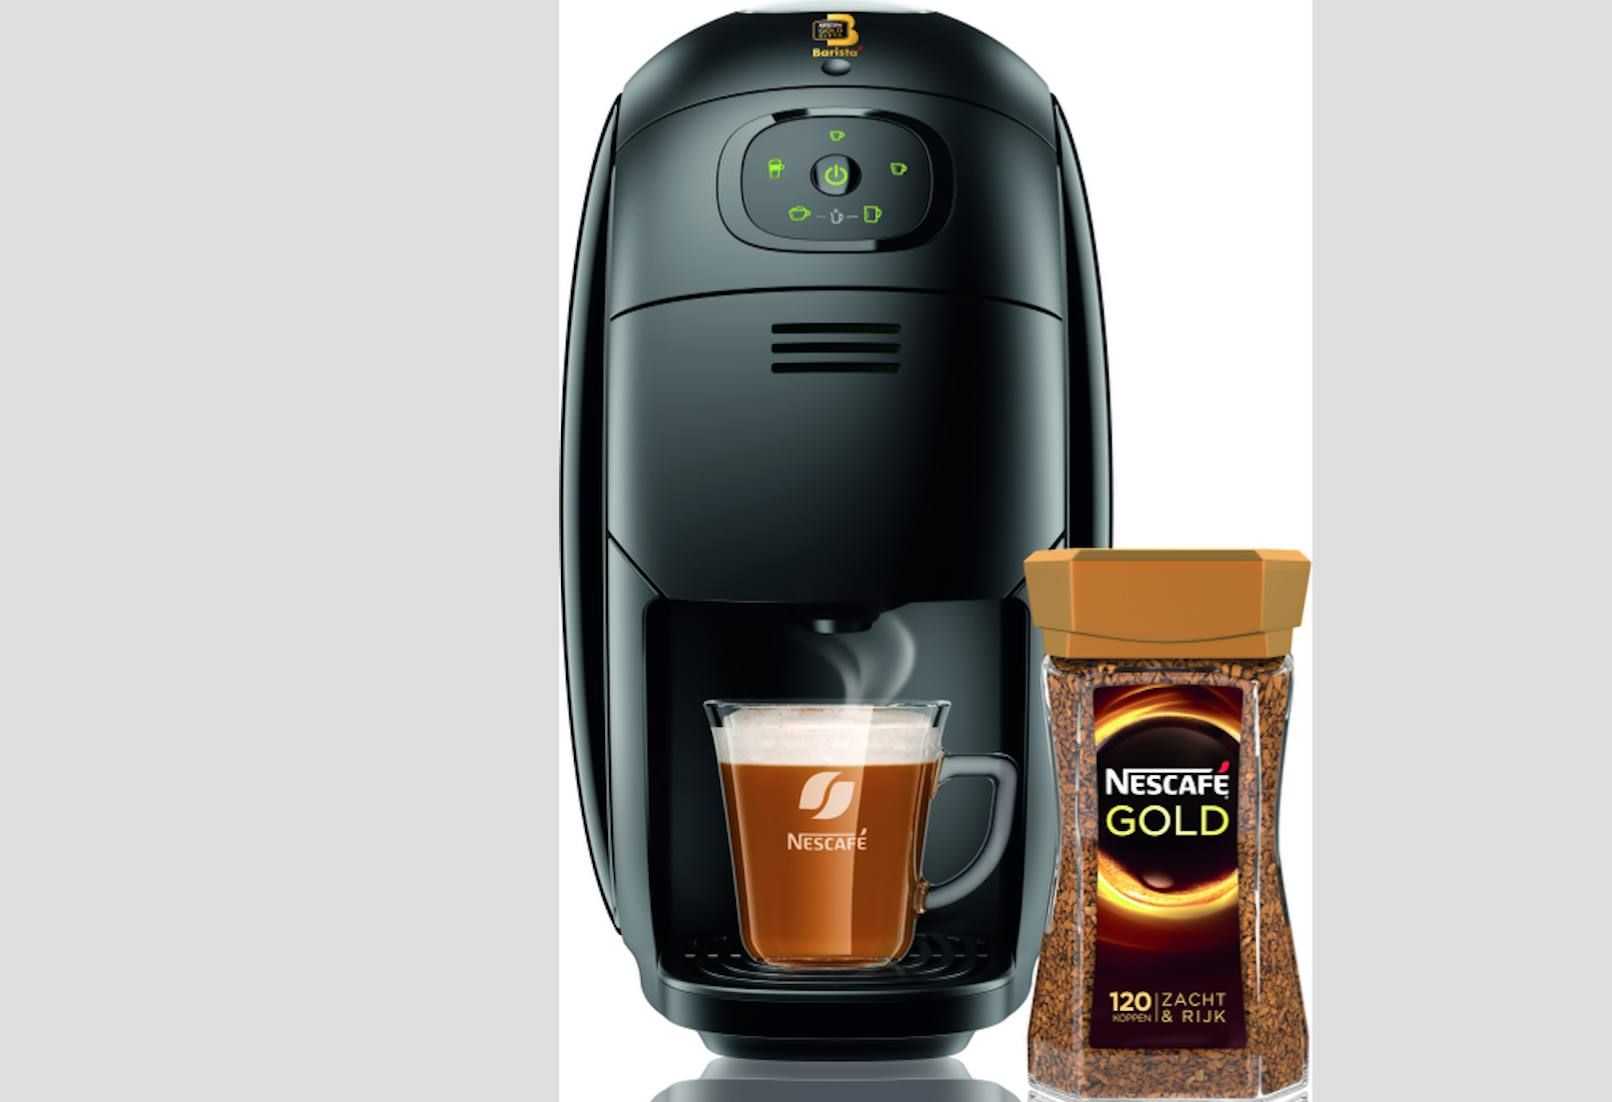 Huiswerk maken voormalig opvolger Fonk - Marketing: NESCAFÉ lanceert koffiemachine voor oploskoffie